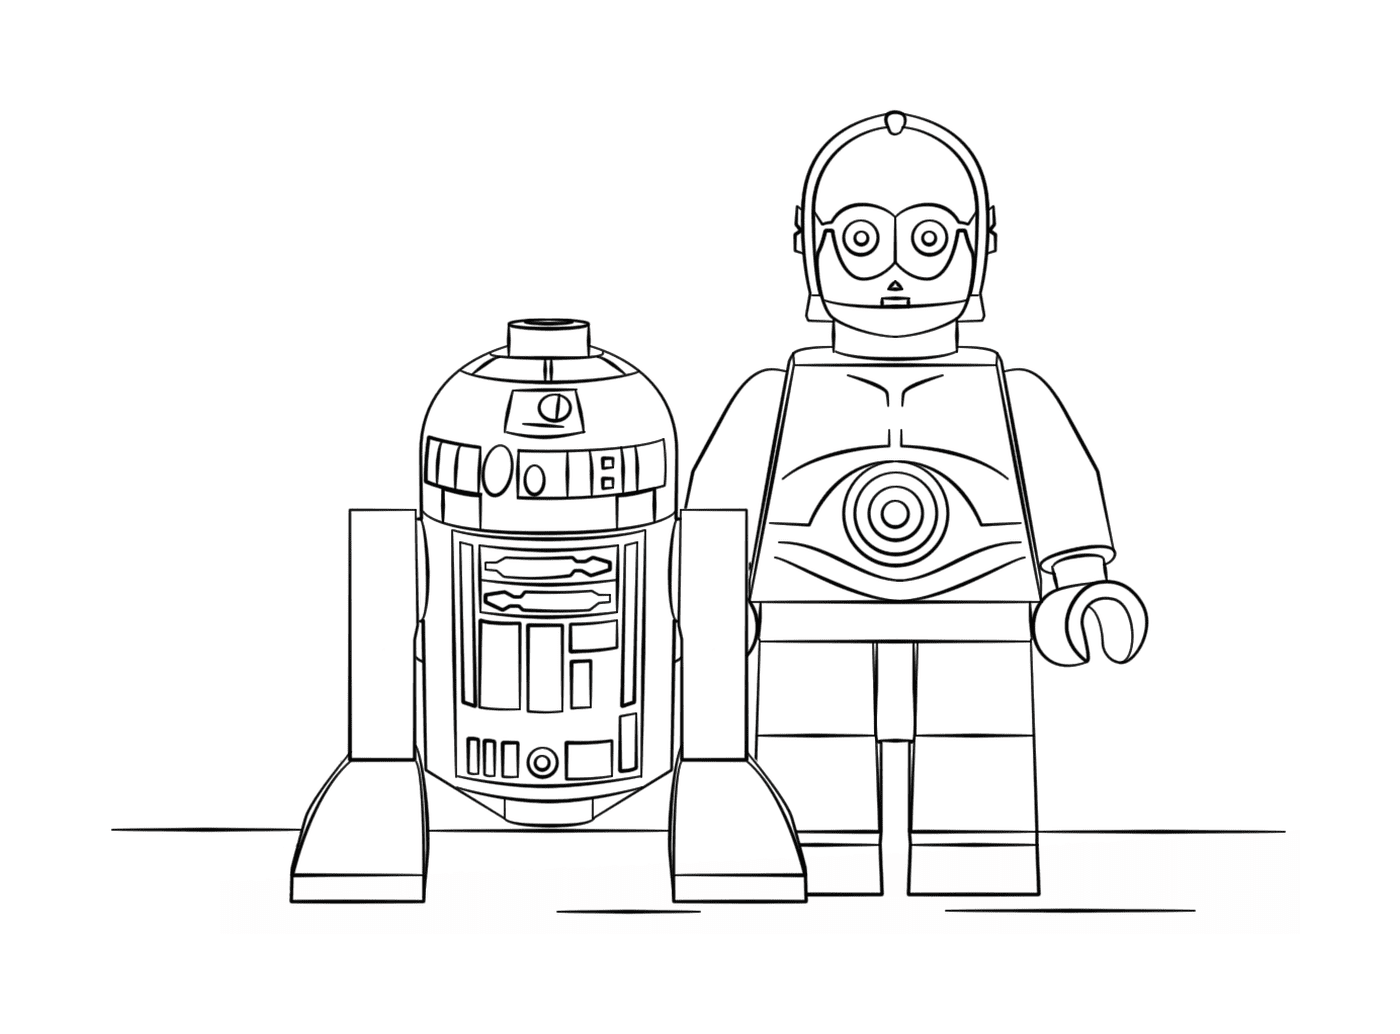  R2D2 und C3PO: Das Lego Star Wars Universum 